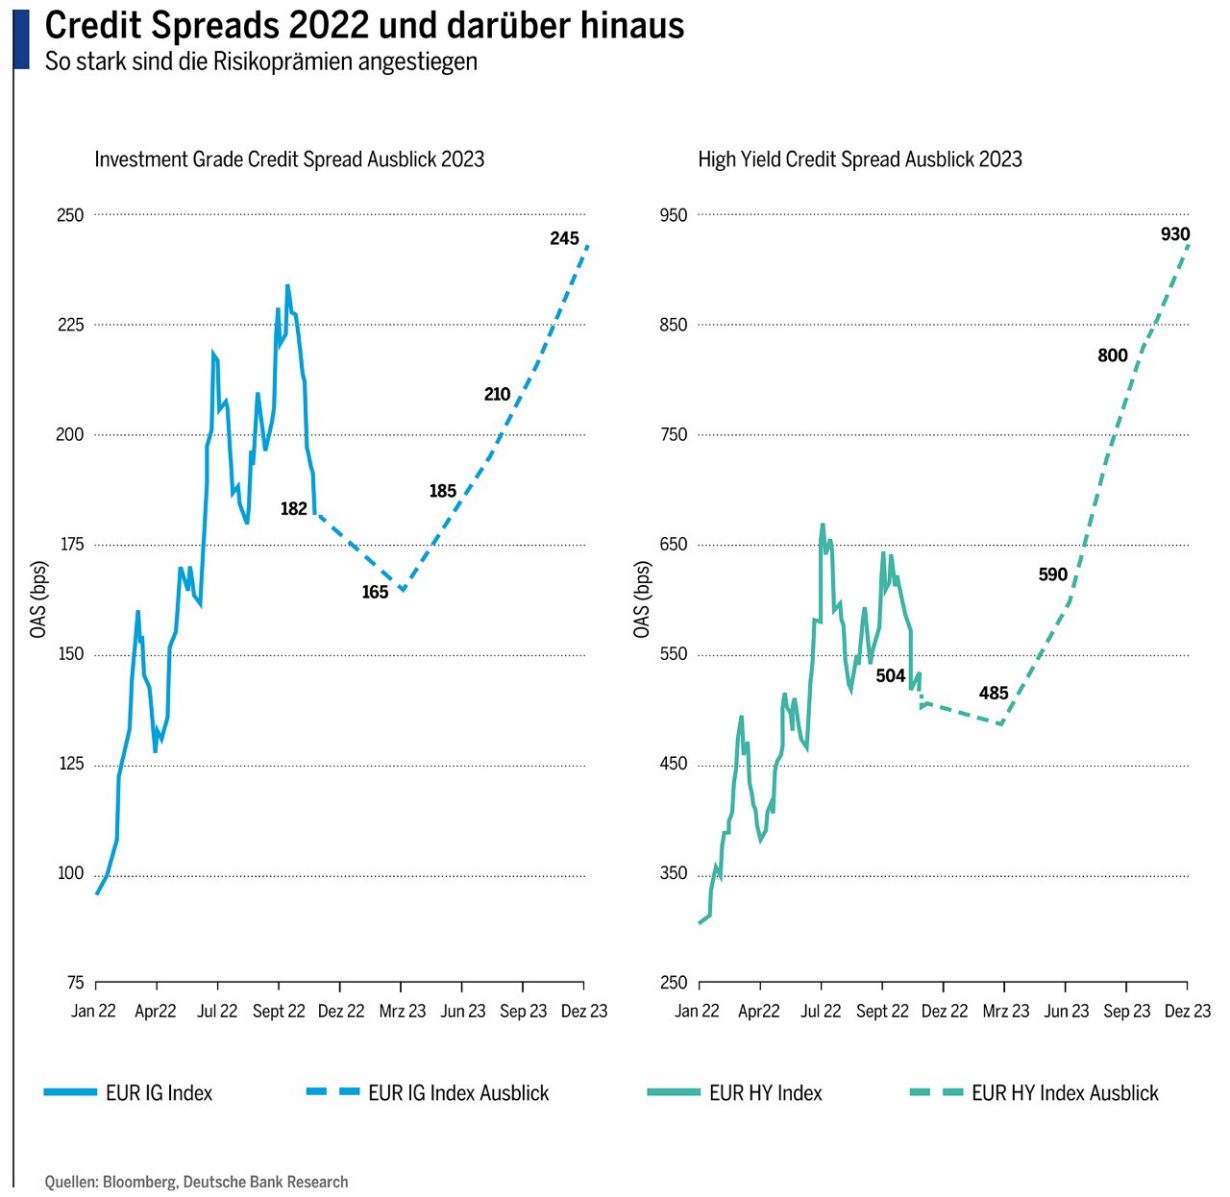 Credit Spreads 2022 und darüber hinaus